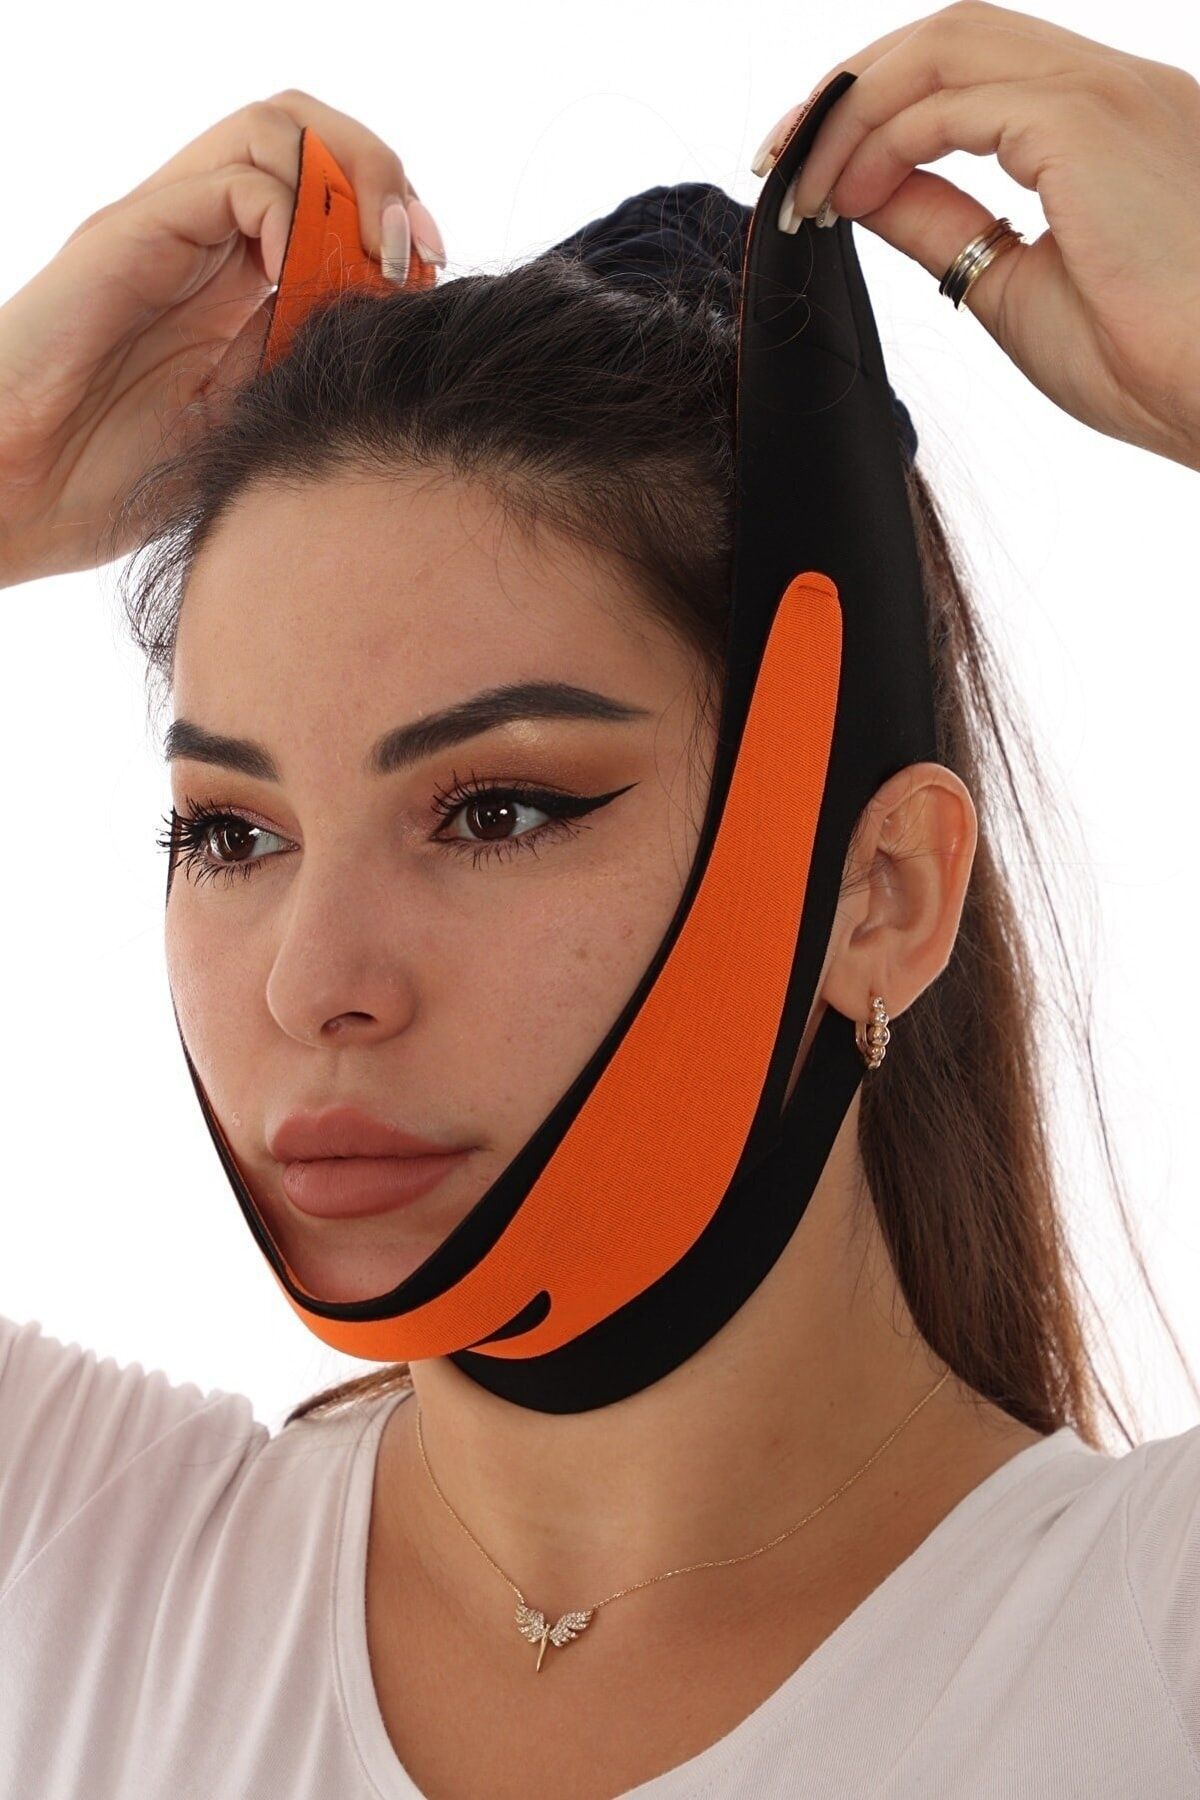 SAUNA SUIT Crıtıcman Çene Boyun Bandı Yüz Liposuction Gıdı Yüz Korsesi Bandajı